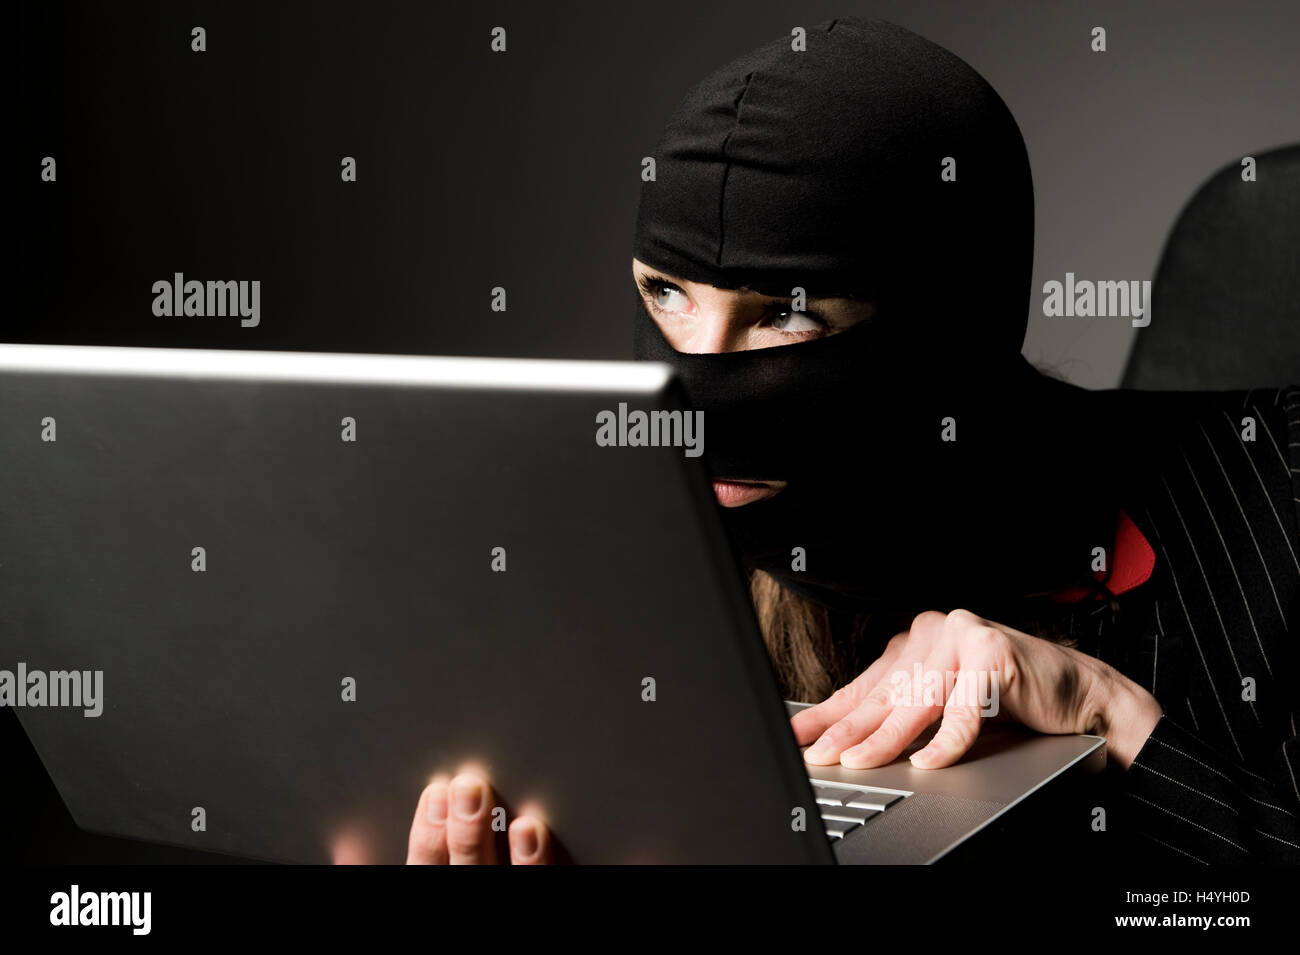 Masked burglar with laptop, economic espionage, data piracy Stock Photo